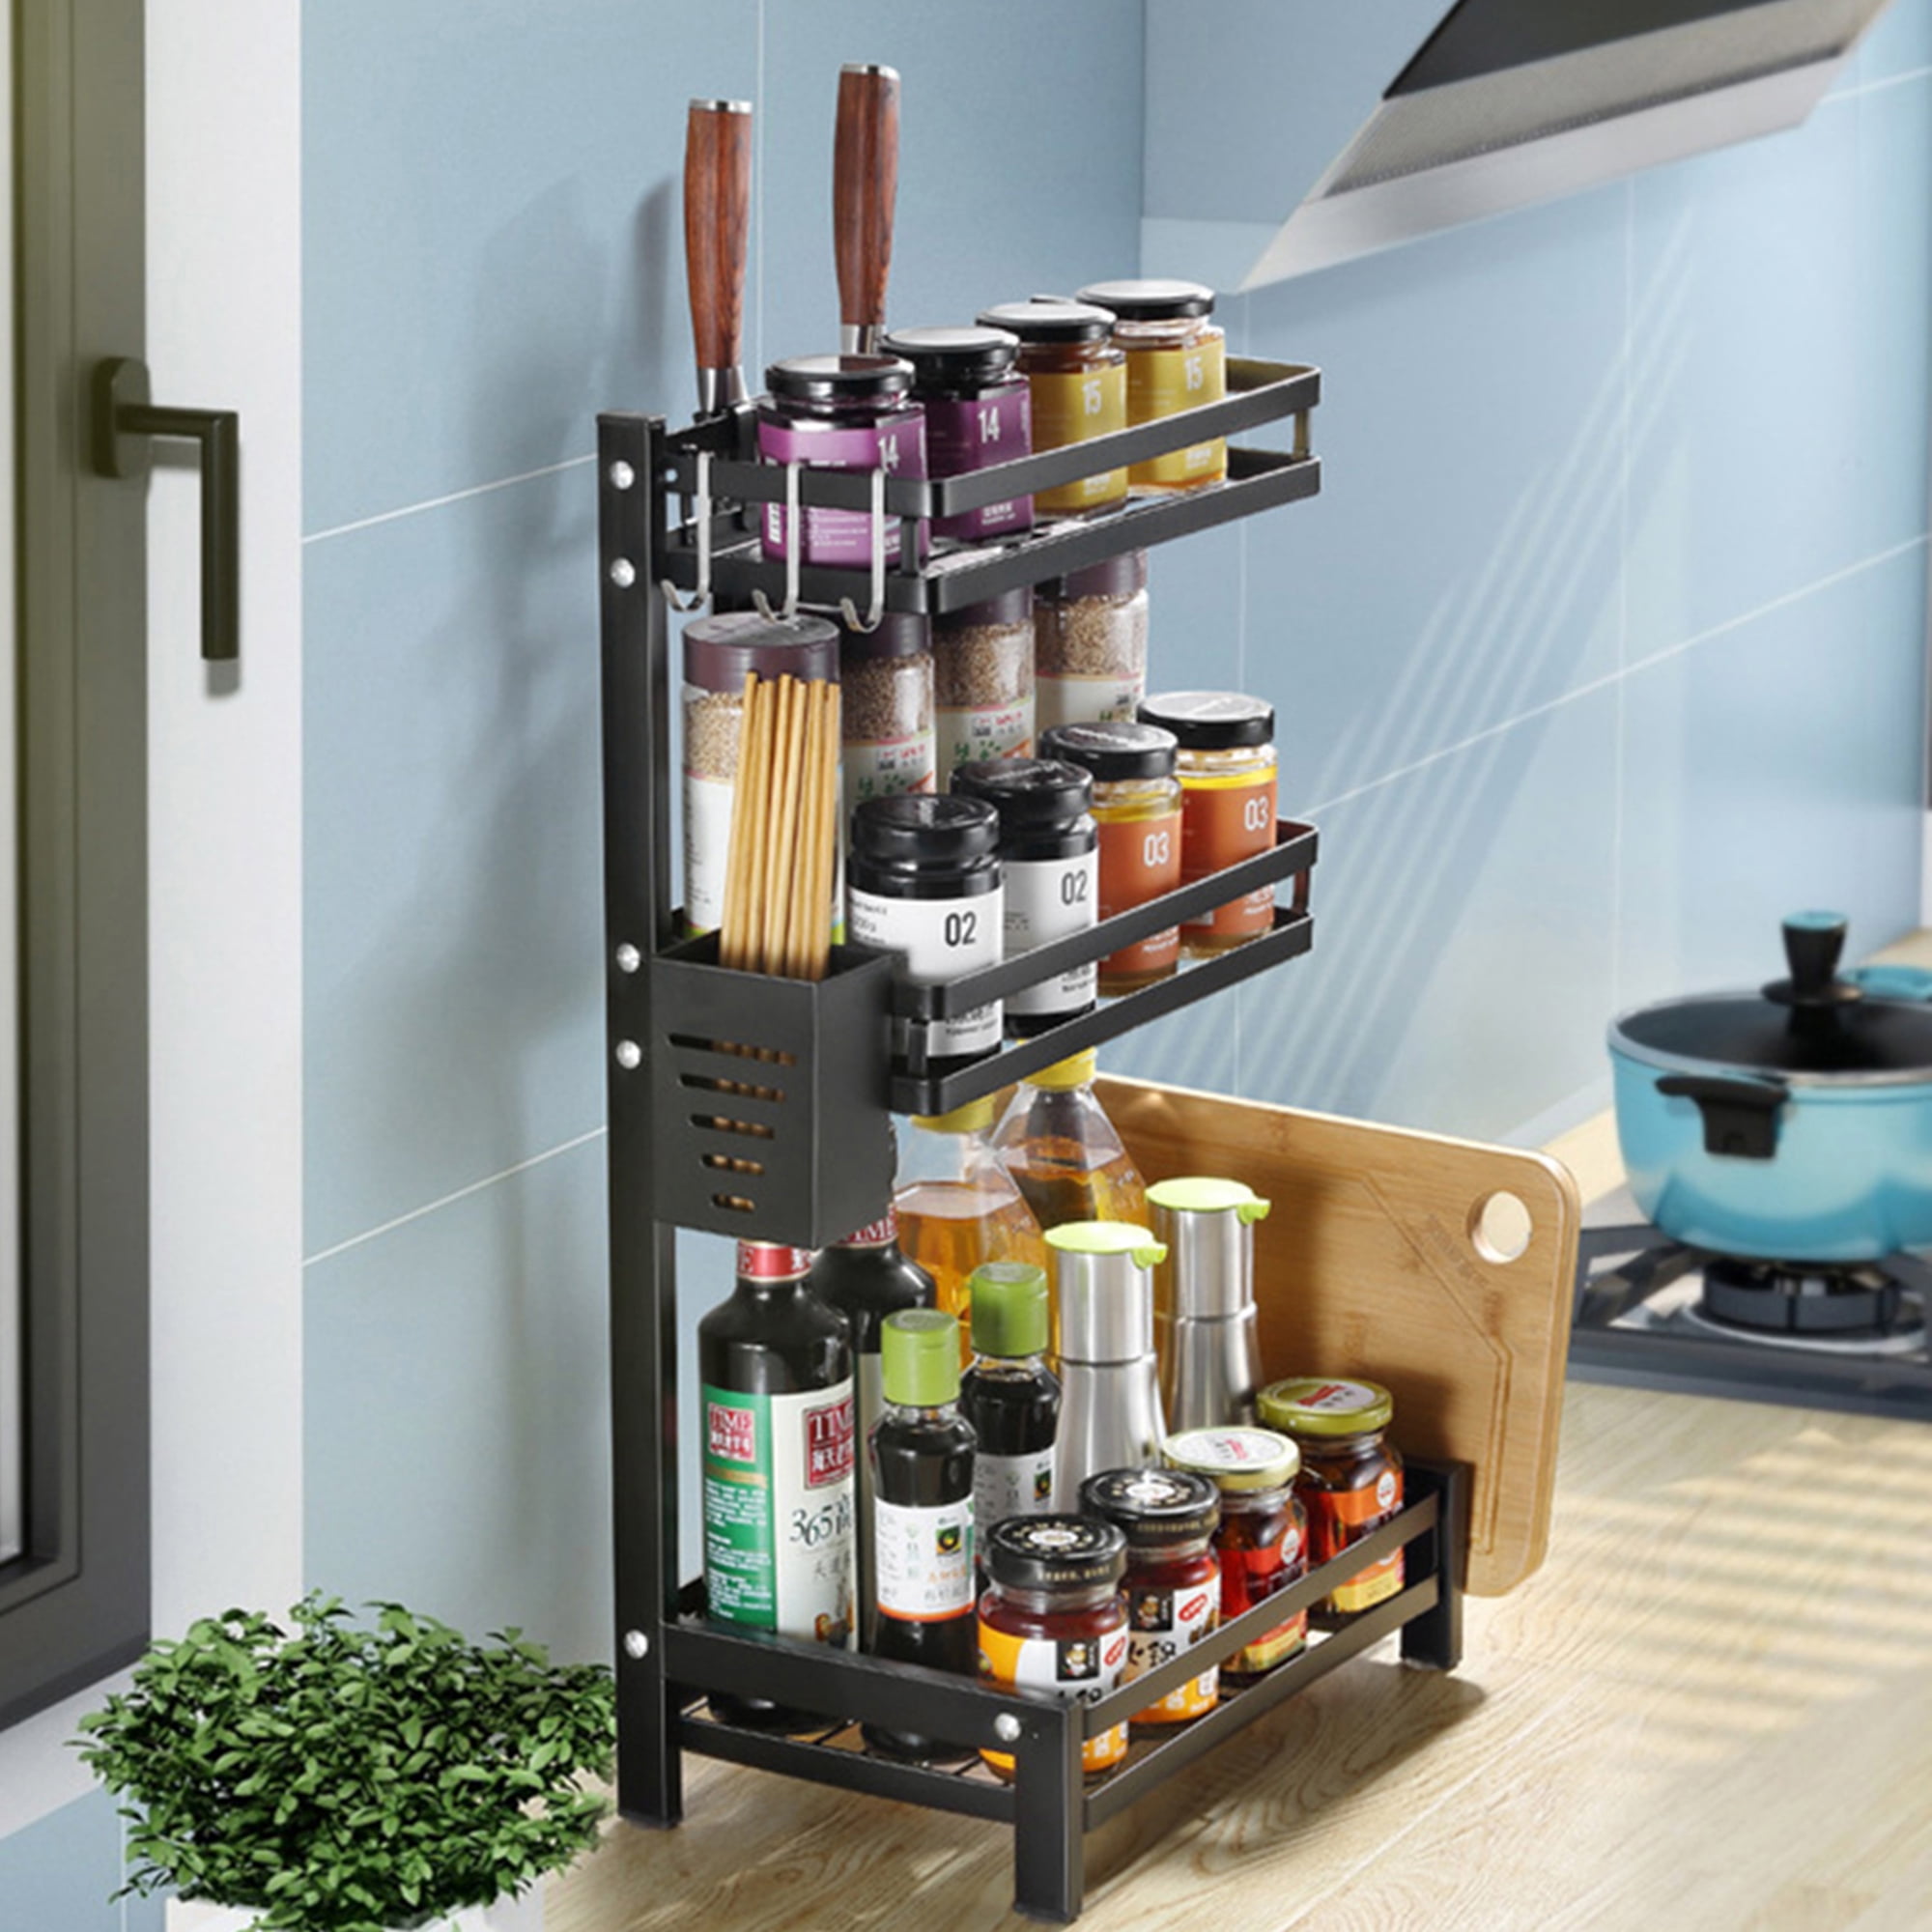 20-35cm Kitchen Wall Shelf  Organizer Iron Storage Holder Basket Spice 